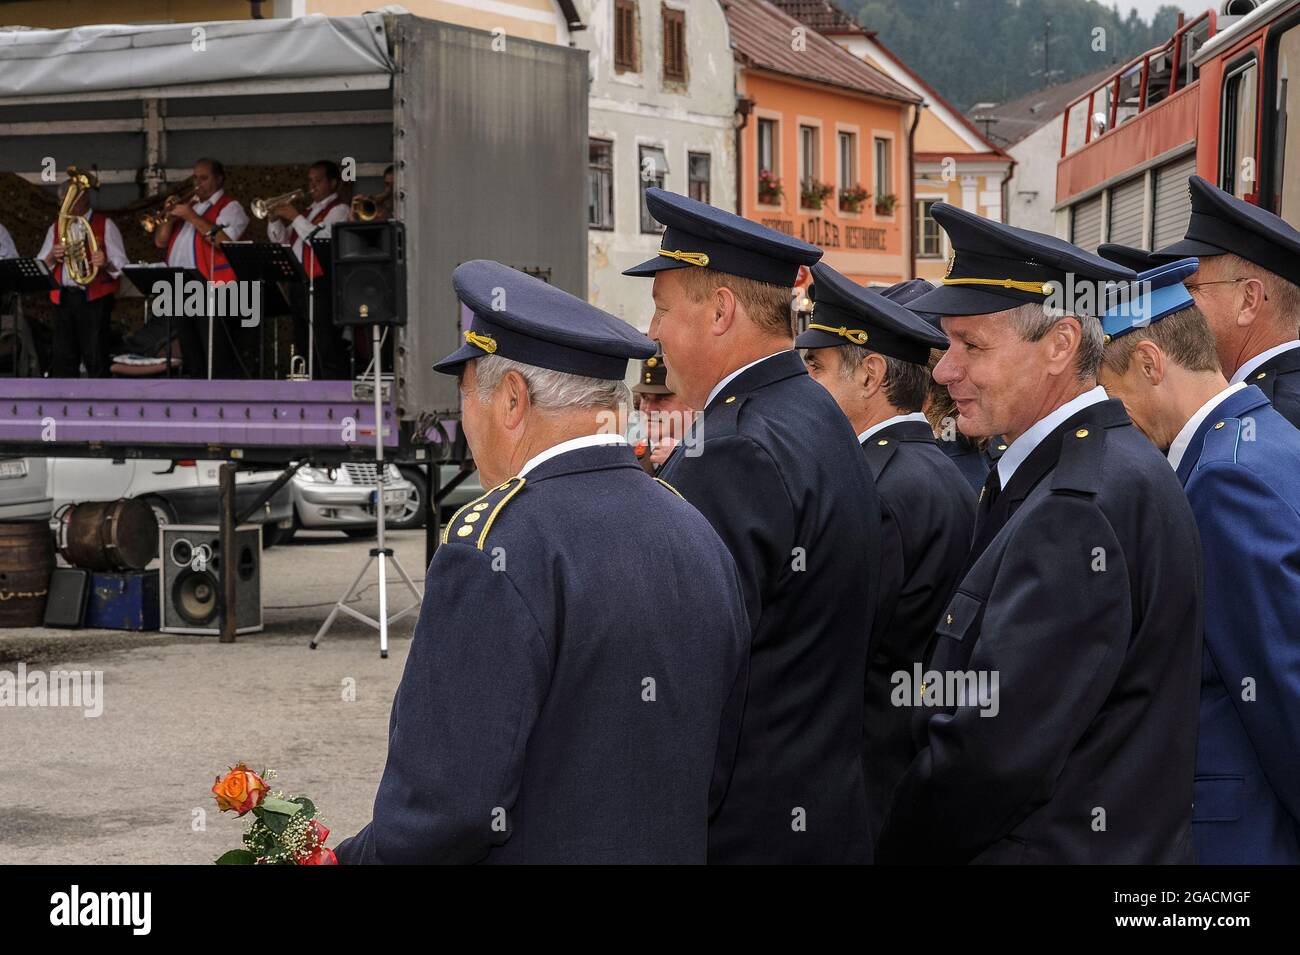 Volontari vigili del fuoco in uniforme blu con cappelli a picco, riuniti  per una cerimonia civica, godersi la musica di Jihočeští Rodáci (nativi  della Boemia meridionale), una band di ottone che suona